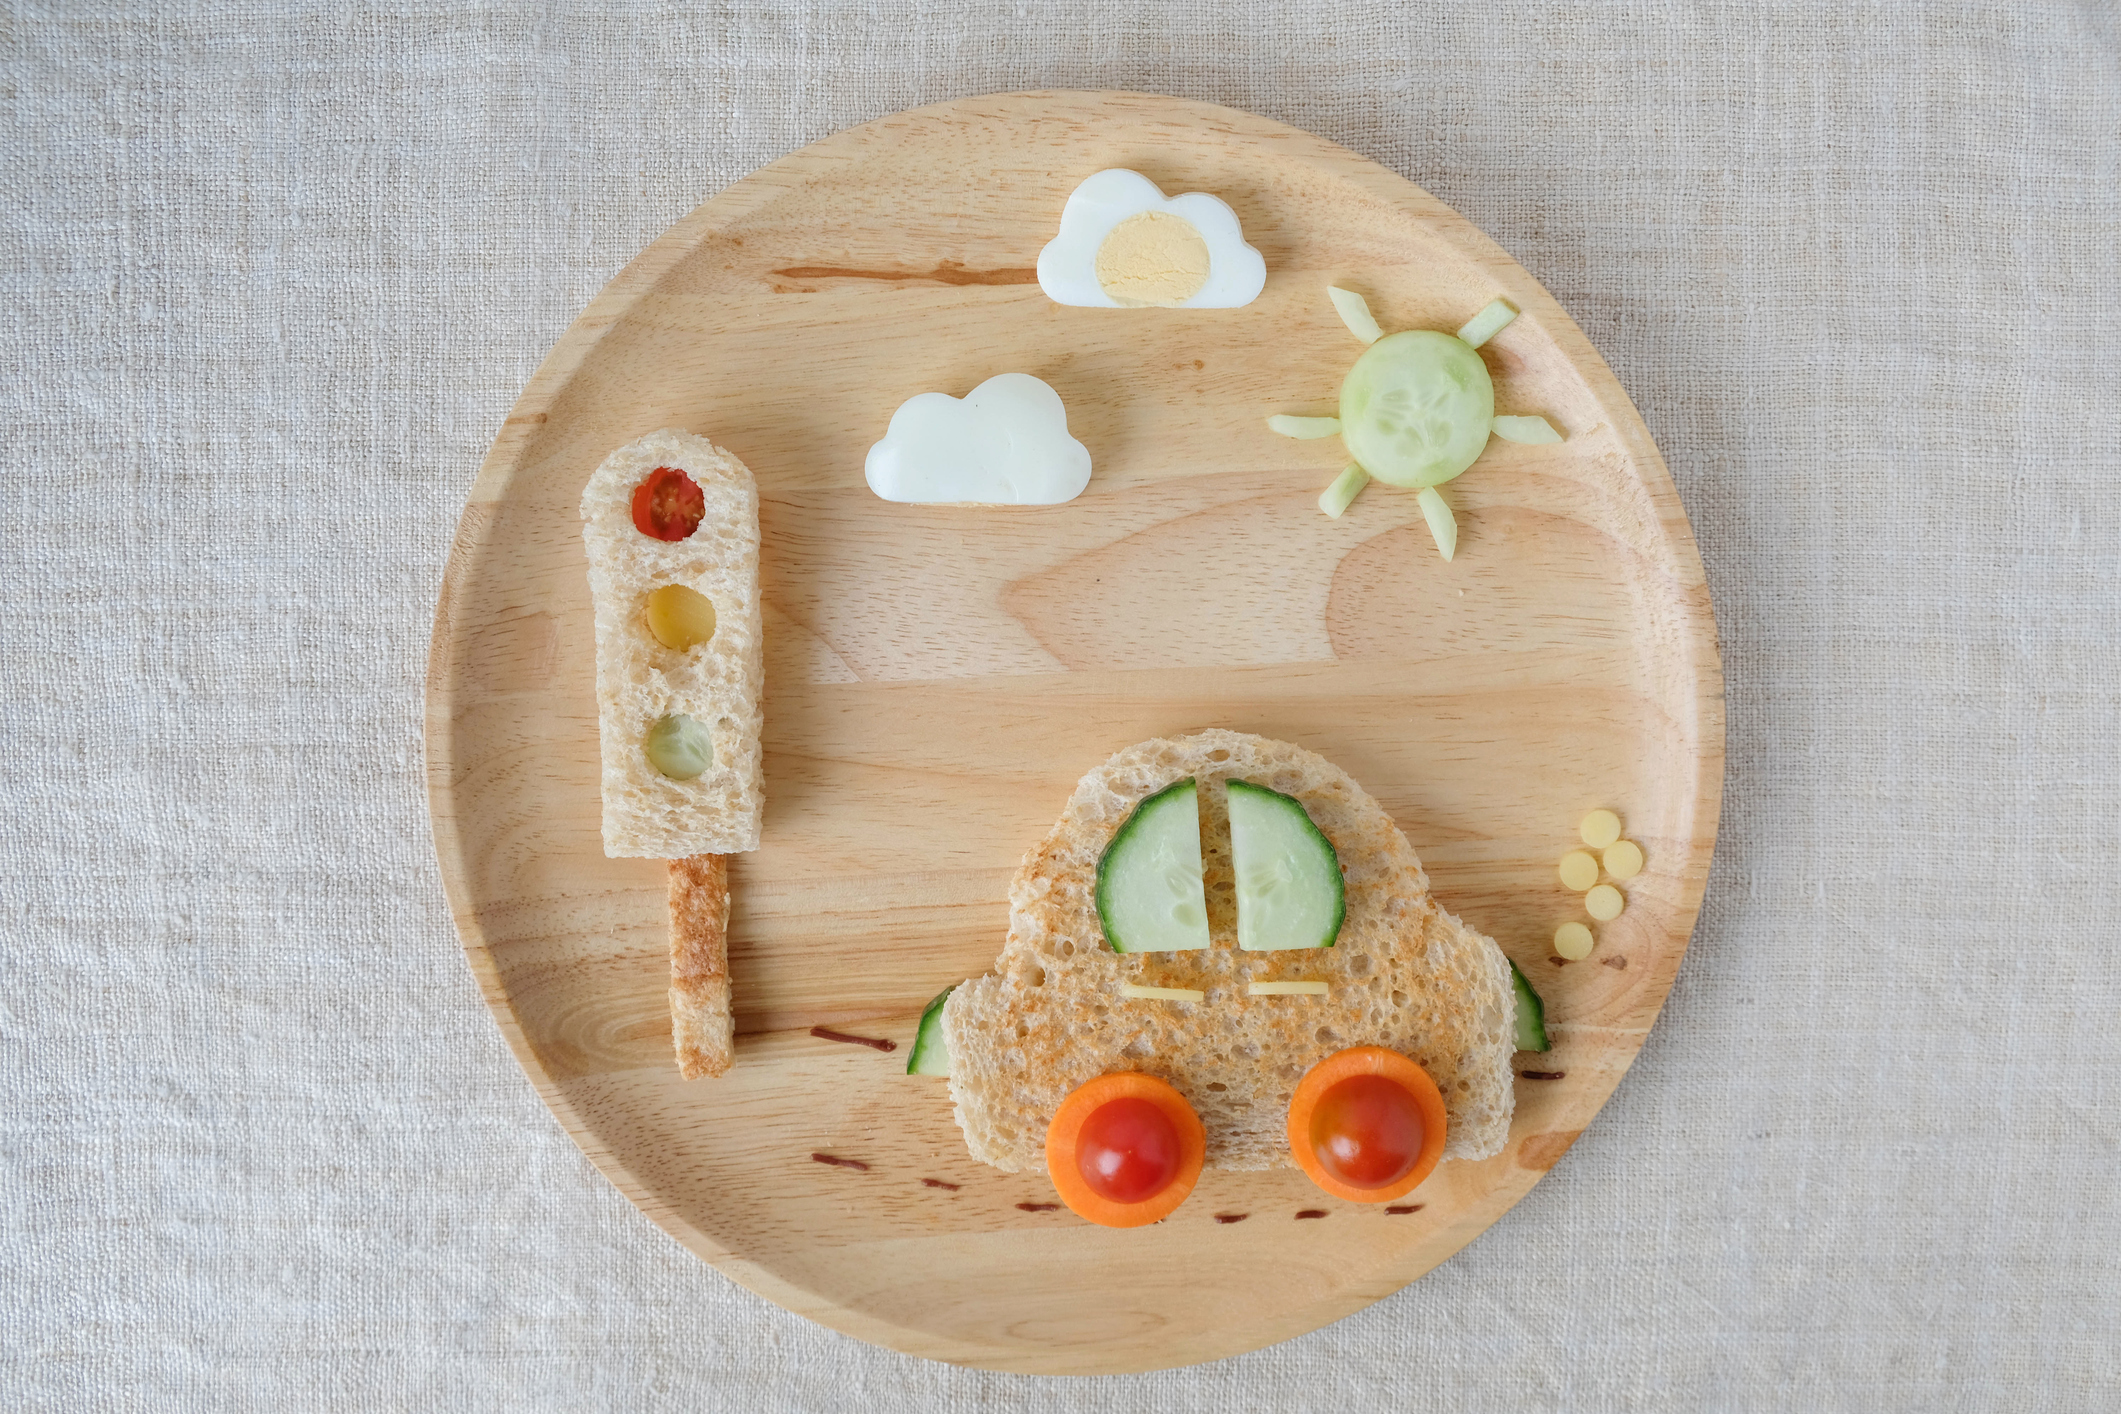 Lehké občerstvení na talíři ve tvaru autíčka. Rajčata, mrkev, okurka, chleba, vejce